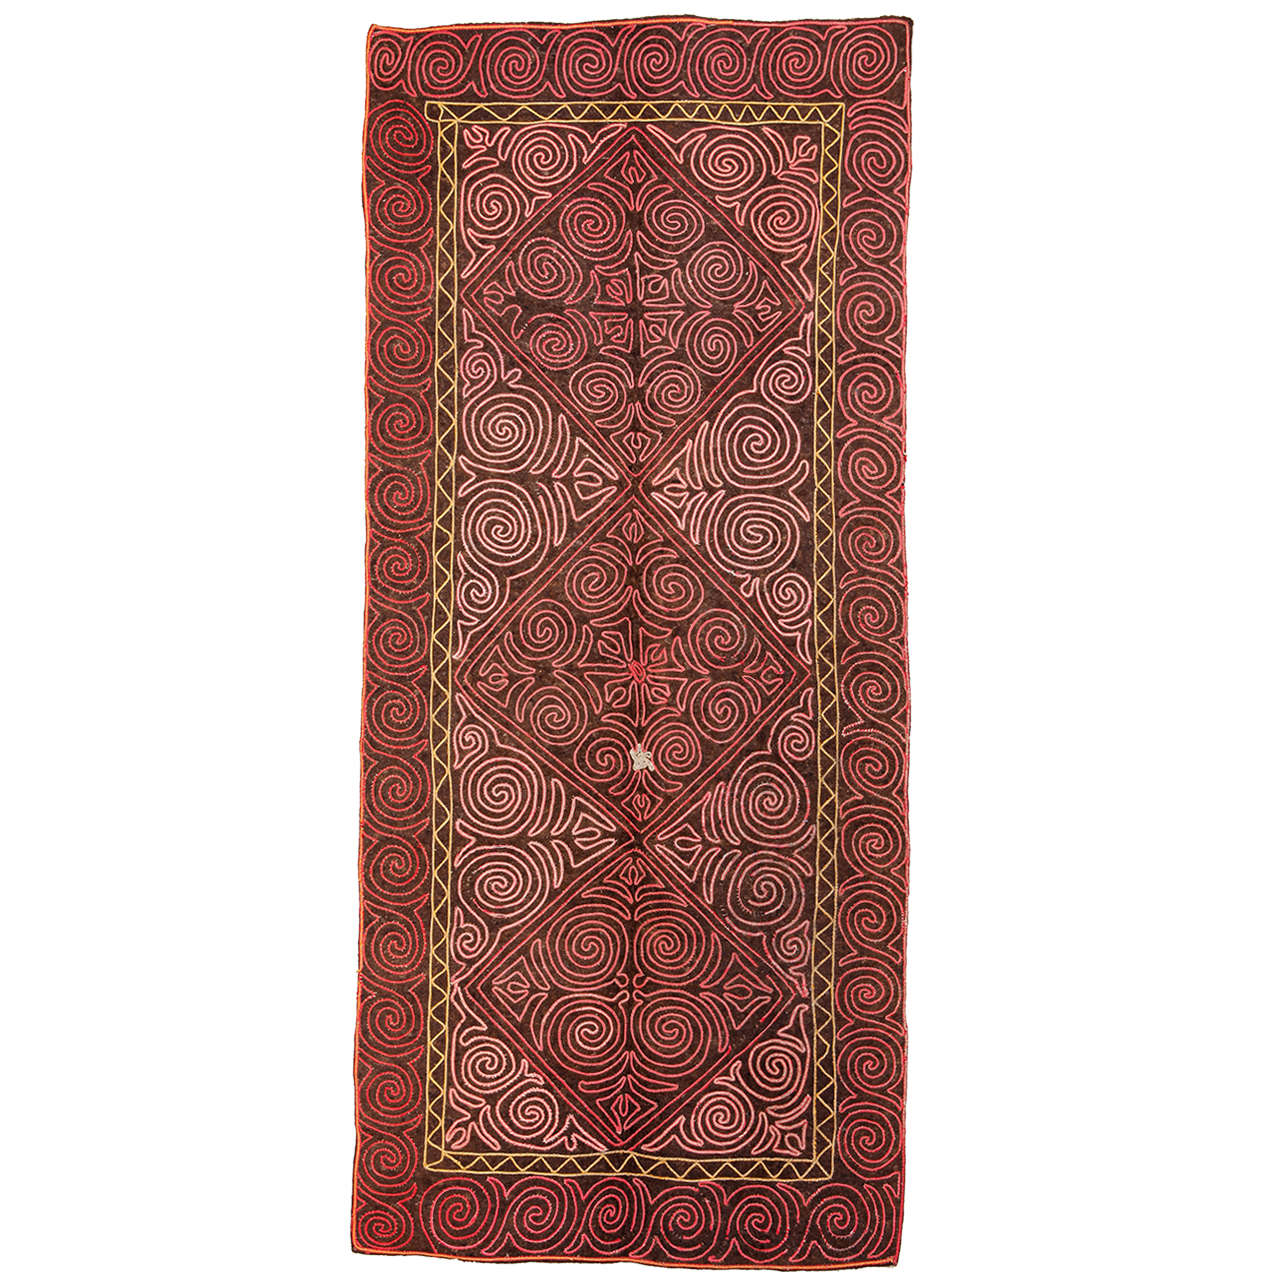 Vintage Embroidered Central Asian Felt Rug